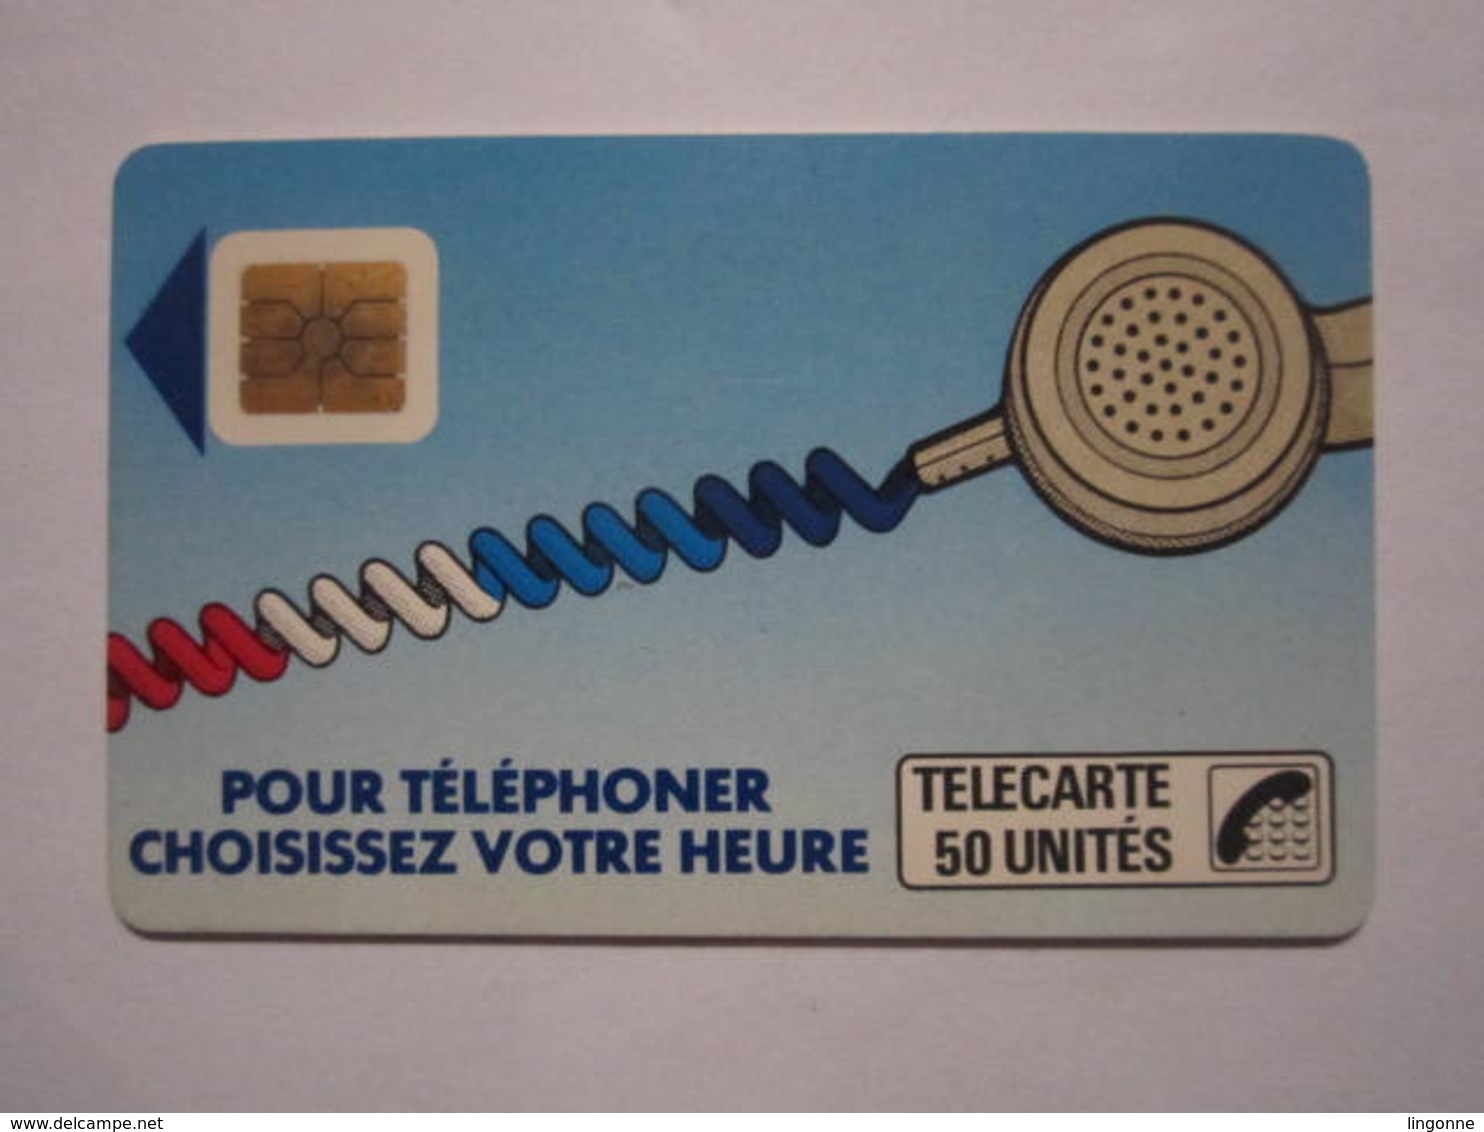 Télécarte De 50.unités - Pour Téléphoner, Choisissez Votre Heure. - 1987